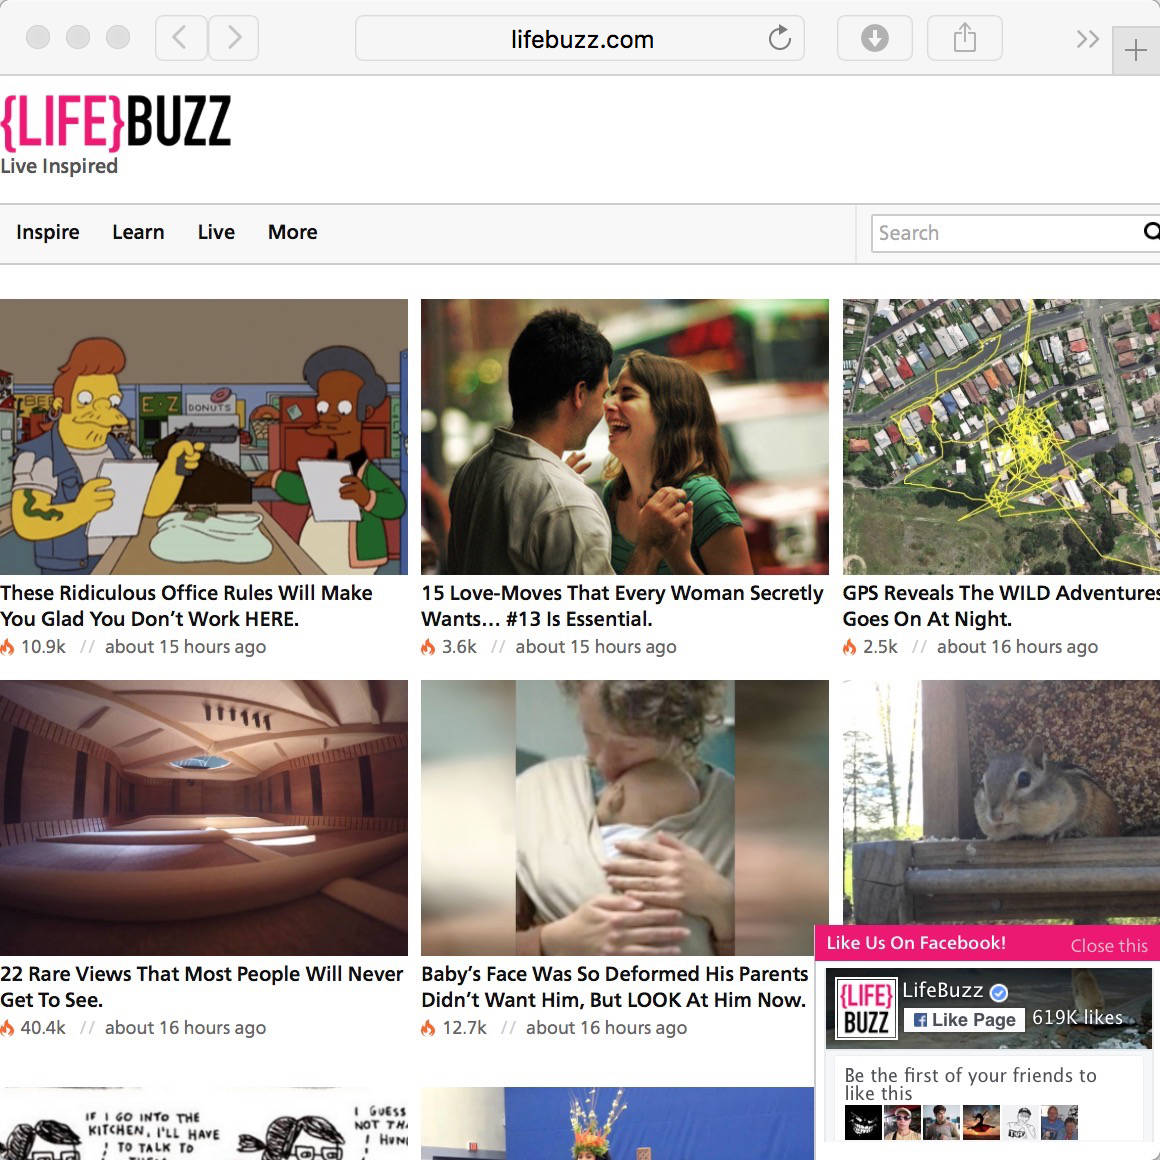 The Lifebuzz.com web site